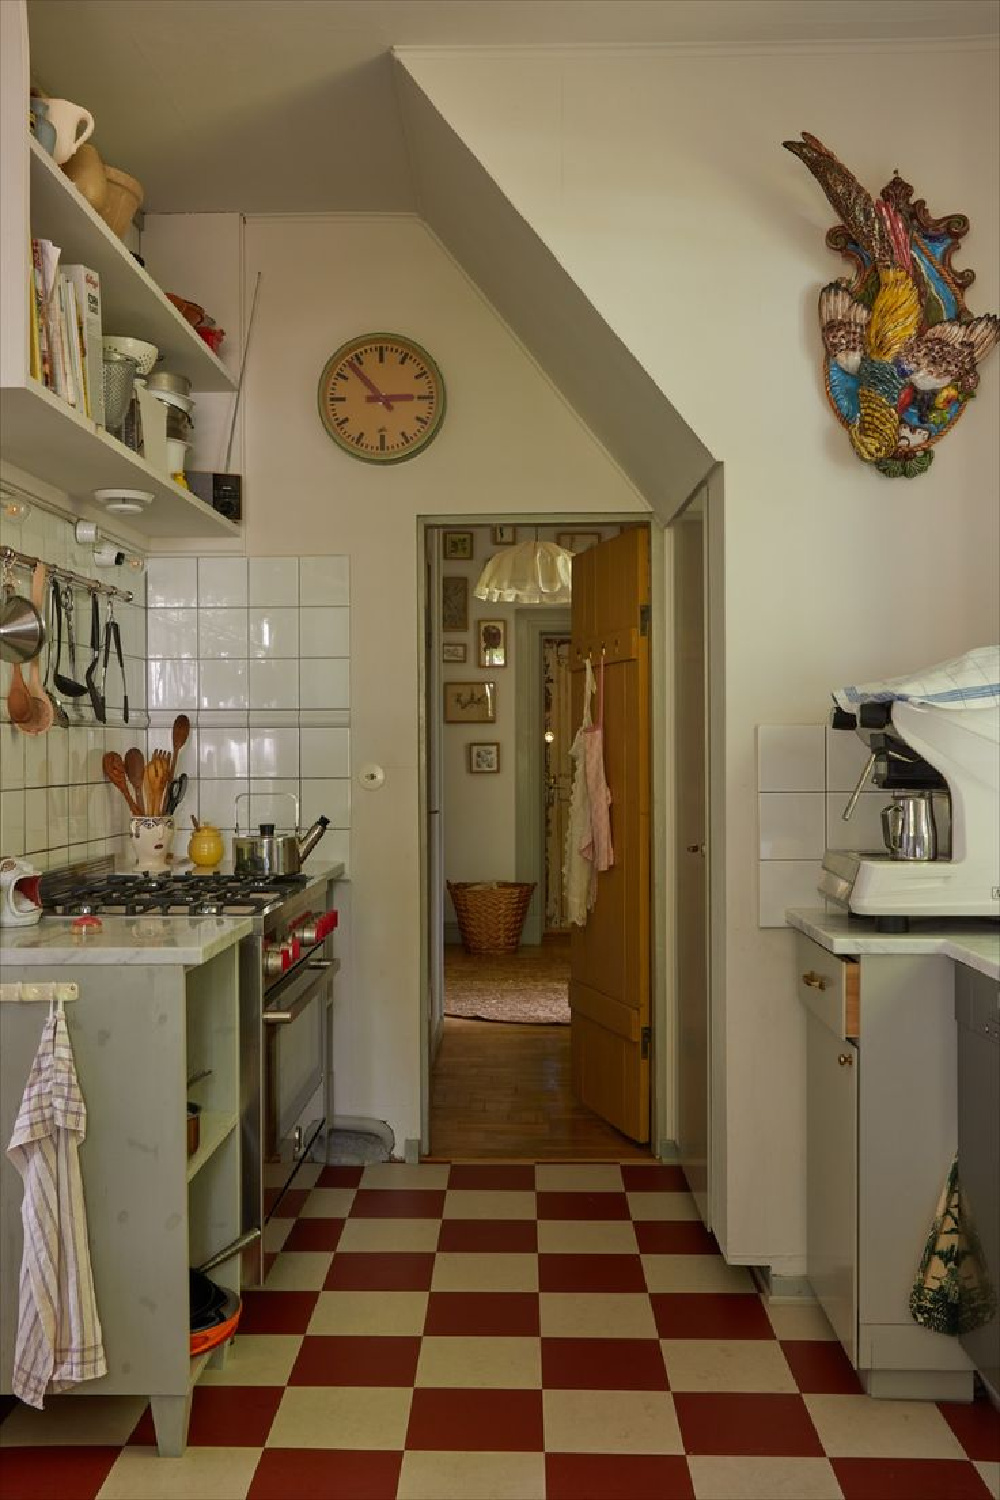 Beata Heuman's own Swedish farmhouse kitchen with checkered floor.